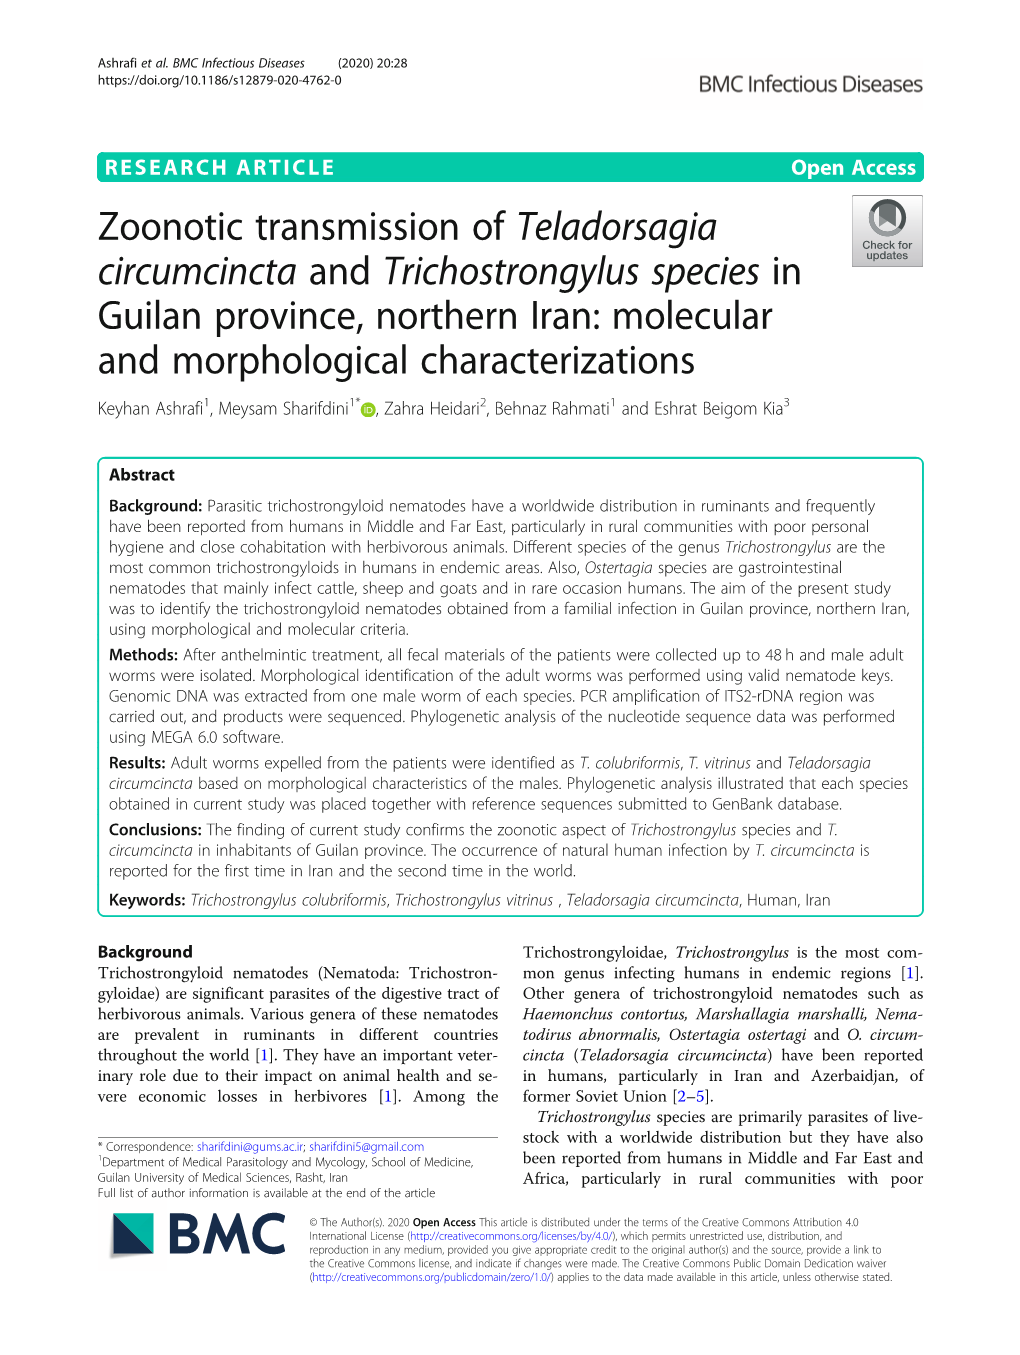 Zoonotic Transmission of Teladorsagia Circumcincta and Trichostrongylus